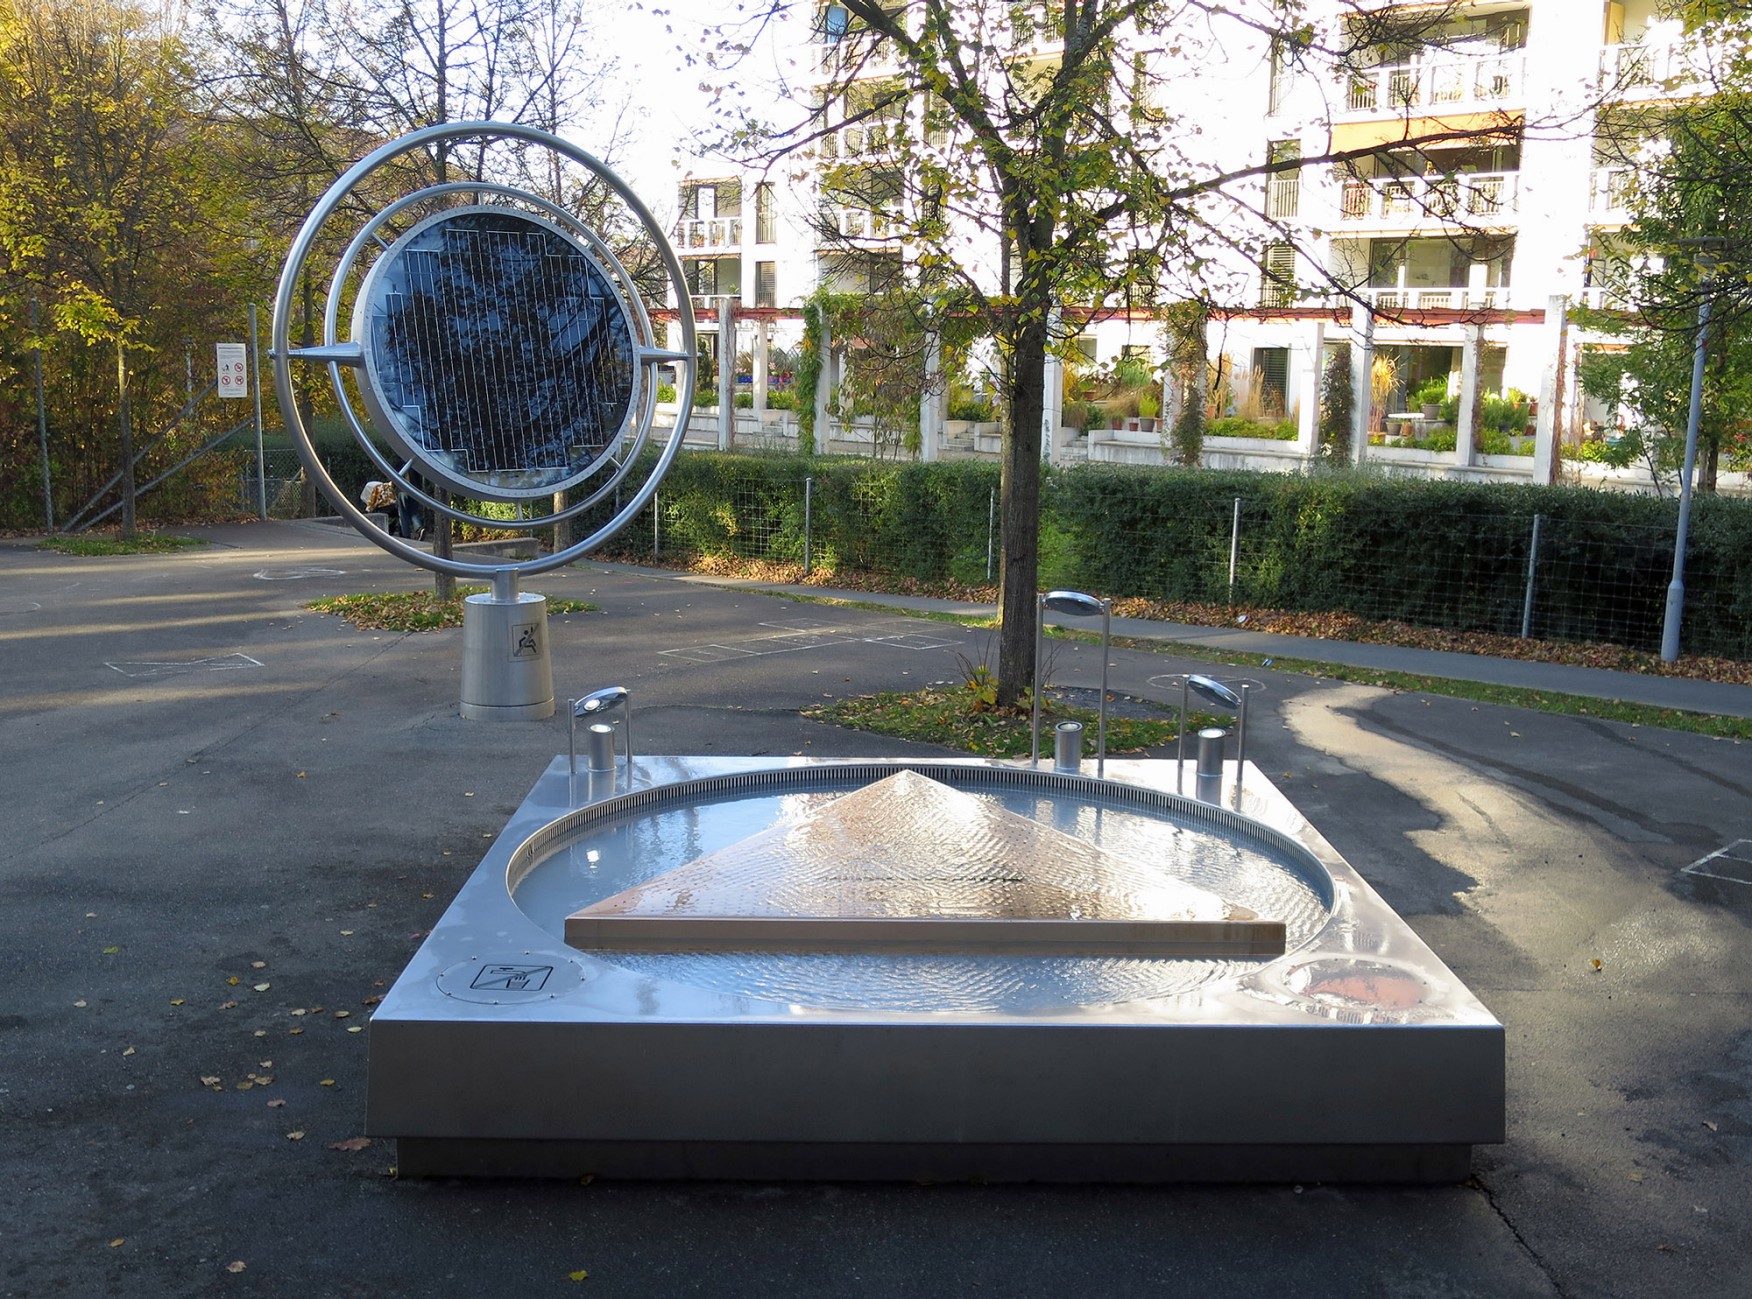  Solarspiegel und Klangbrunnen auf dem Pausenplatz